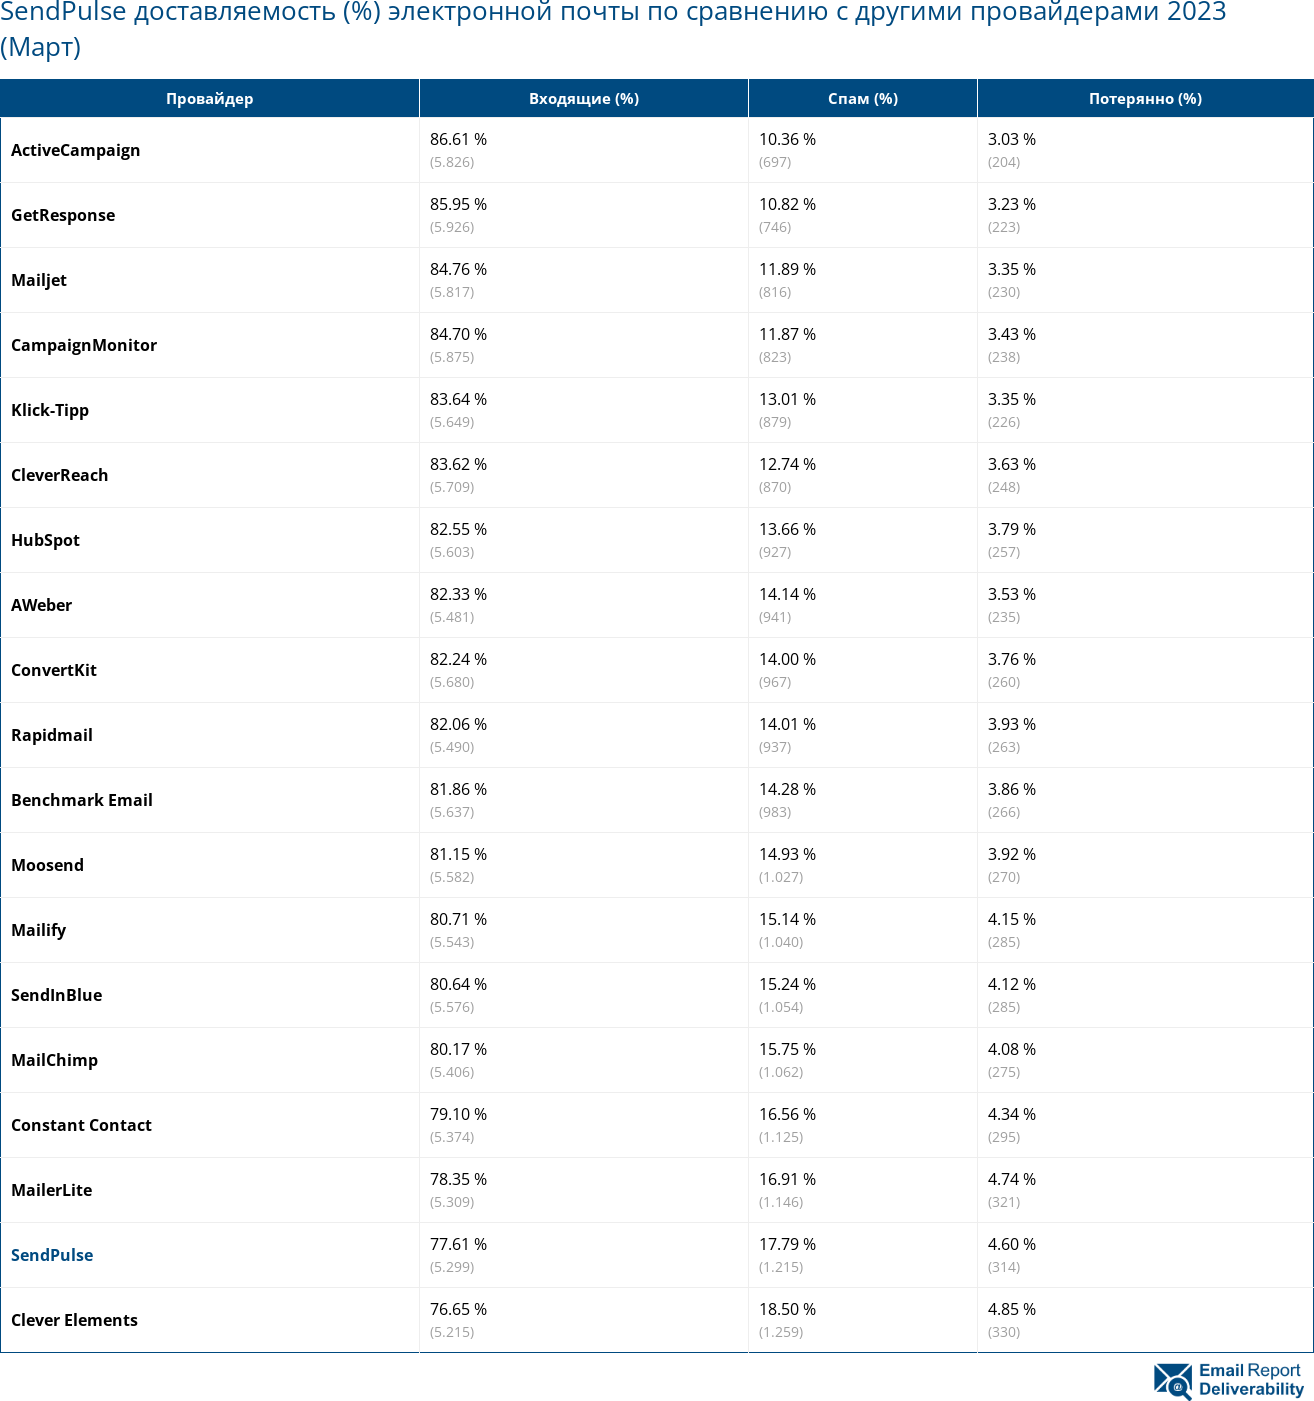 SendPulse доставляемость (%) электронной почты по сравнению с другими провайдерами 2023 (Март)